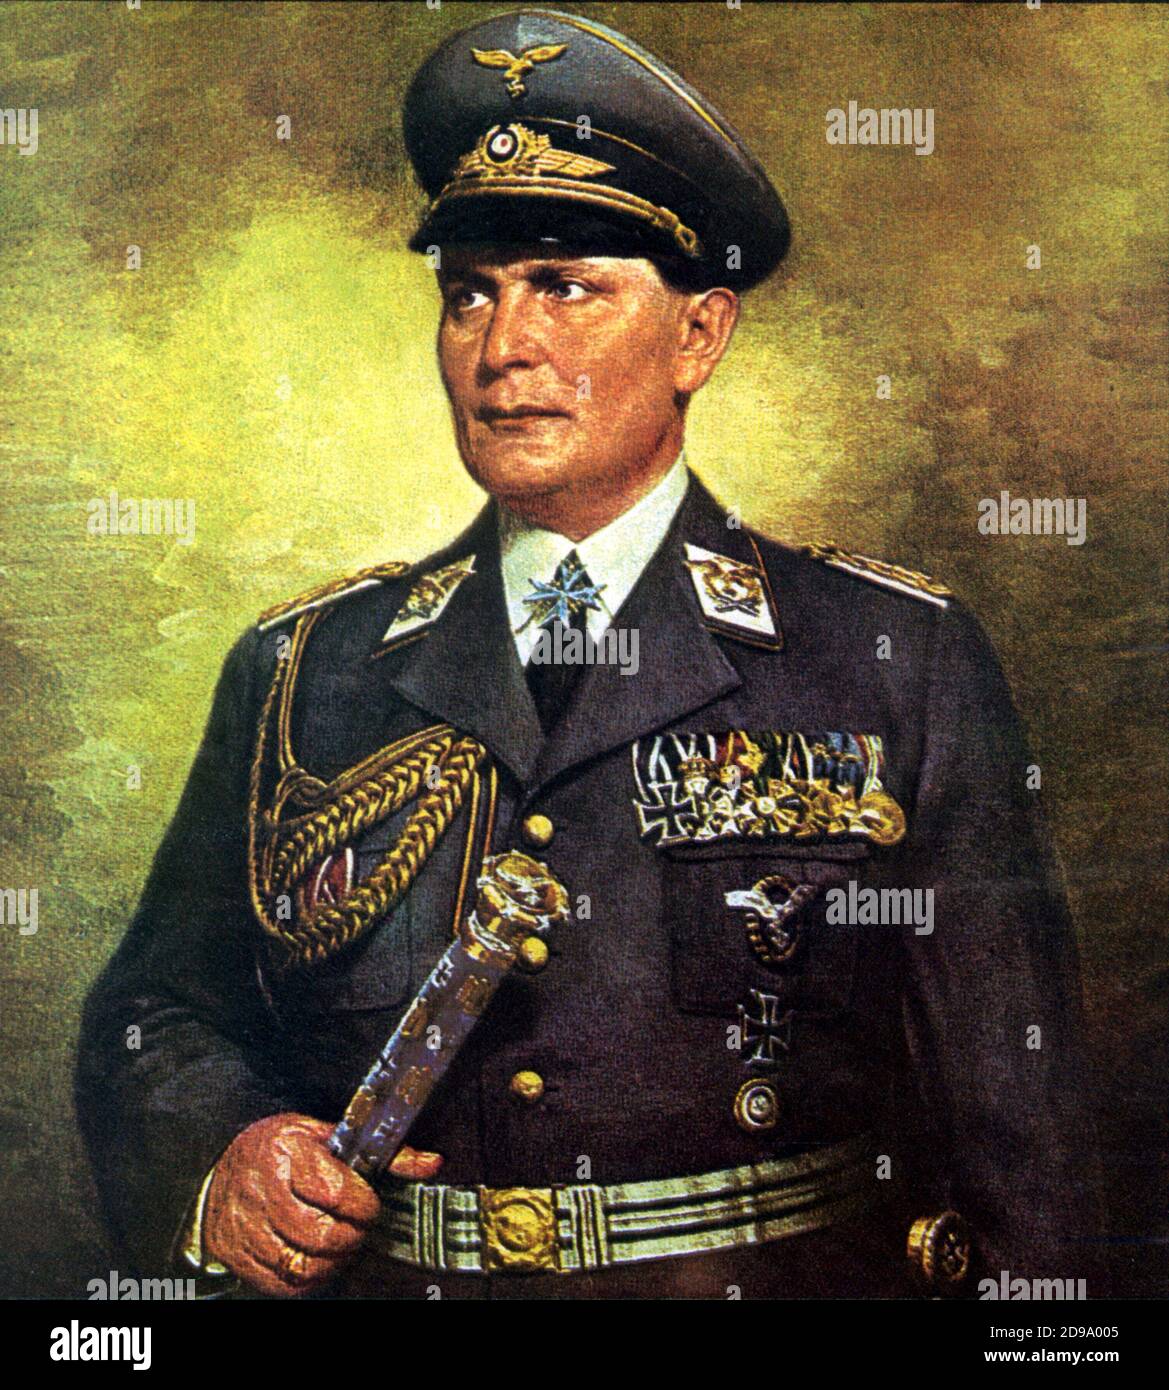 Il tedesco Field Marchall HERMANN GOERING (1893-1946), Comandante di Luftwaffe - NAZISTA - NAZISTA - NAZISTA - NAZISTA - NAZISMO - seconda guerra mondiale - seconda guerra mondiale - ritratto - ritratto - divisa militare - uniforme militare - medaglie - aviazione - Hitler ---- Archivio GBB Foto Stock